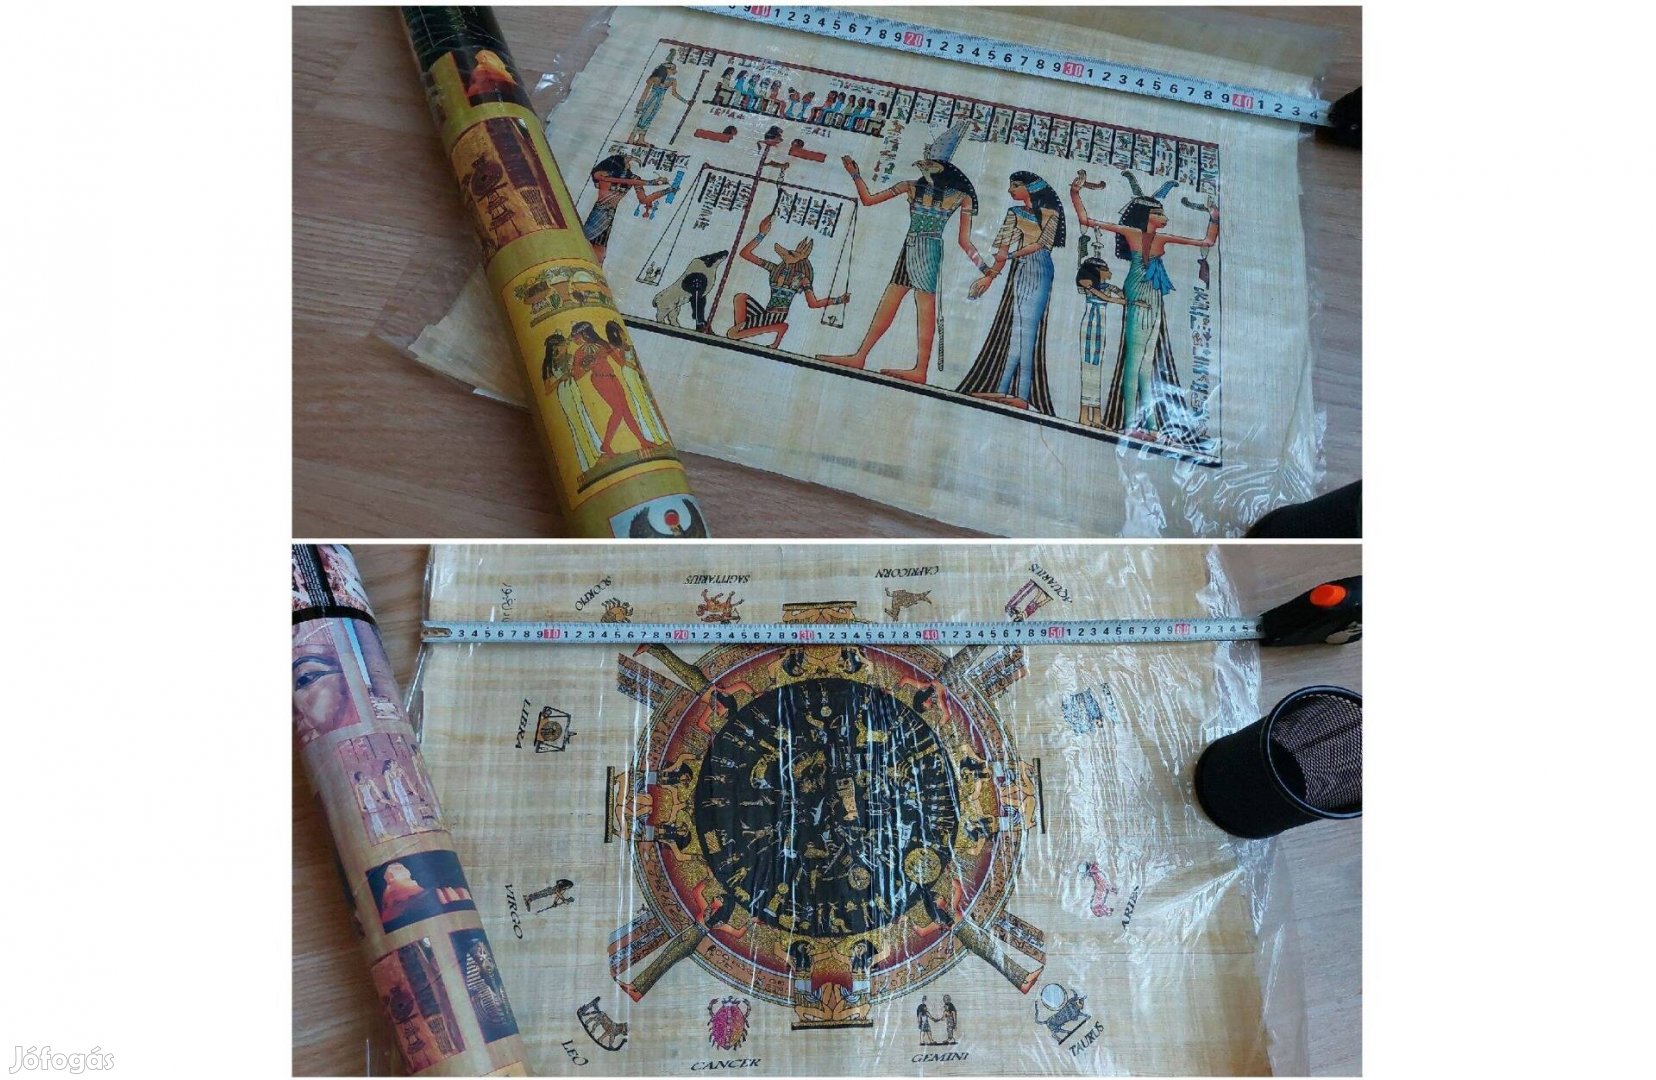 Egyiptomi papyrus/papirus/papíruszok eladók (újak):